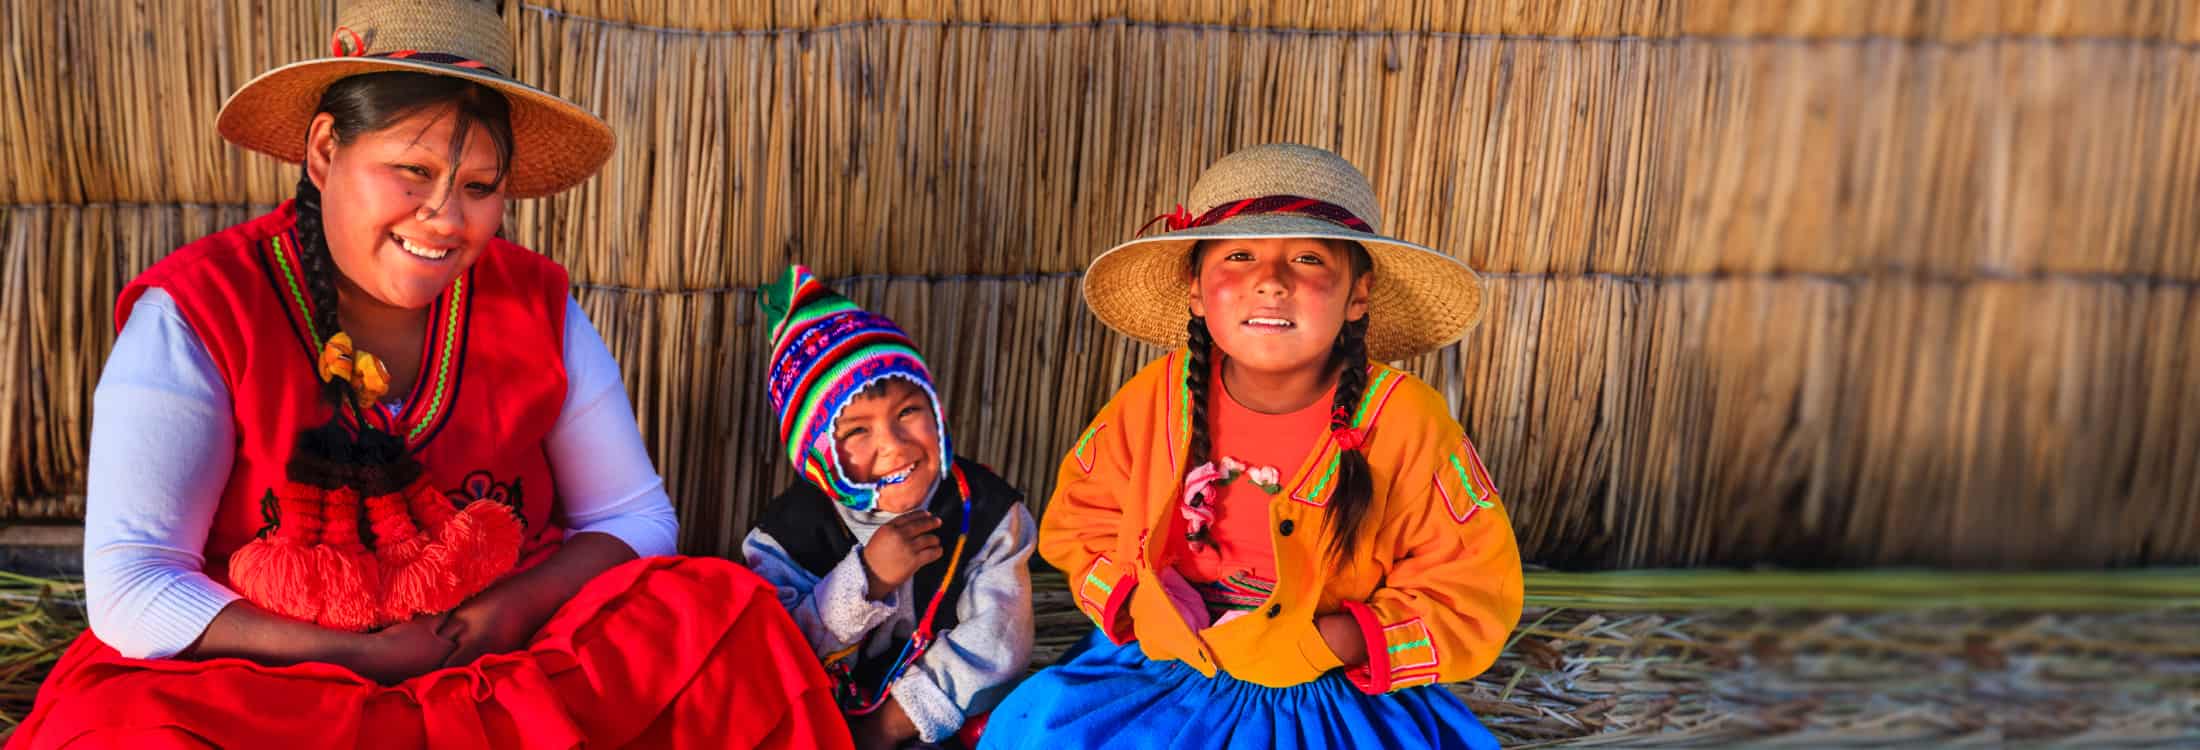 Envie dinheiro aos seus entes queridos no Peru - rápido e seguro com sendvalu